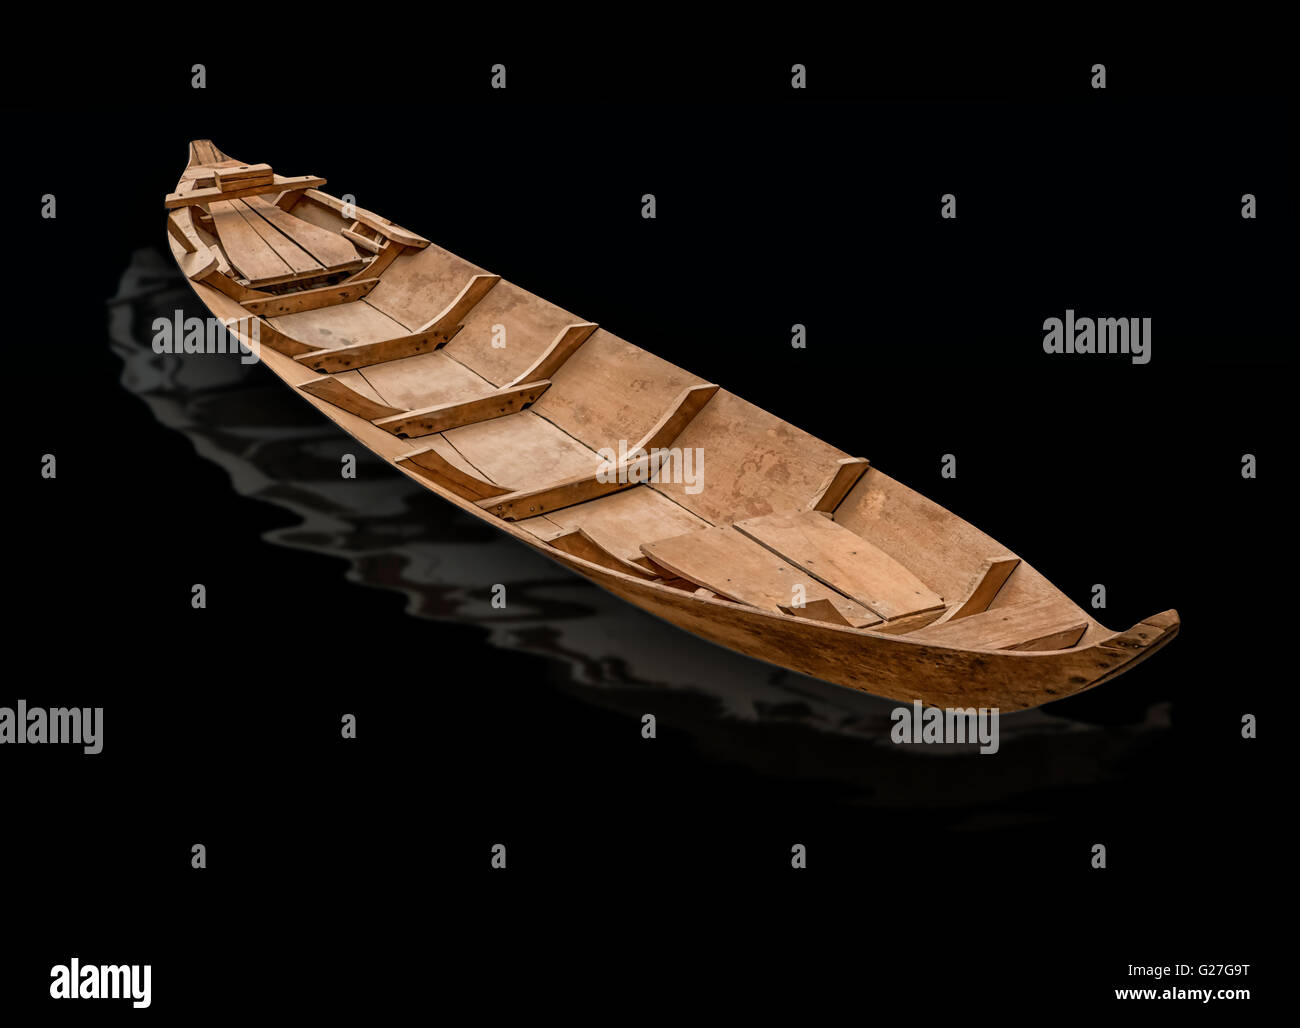 Eine vietnamesische Sampan, Flachwasser, kleines Boot. Das Bild wurde ausgeschlagen und auf einer schwarzen background.presentation Stockfoto